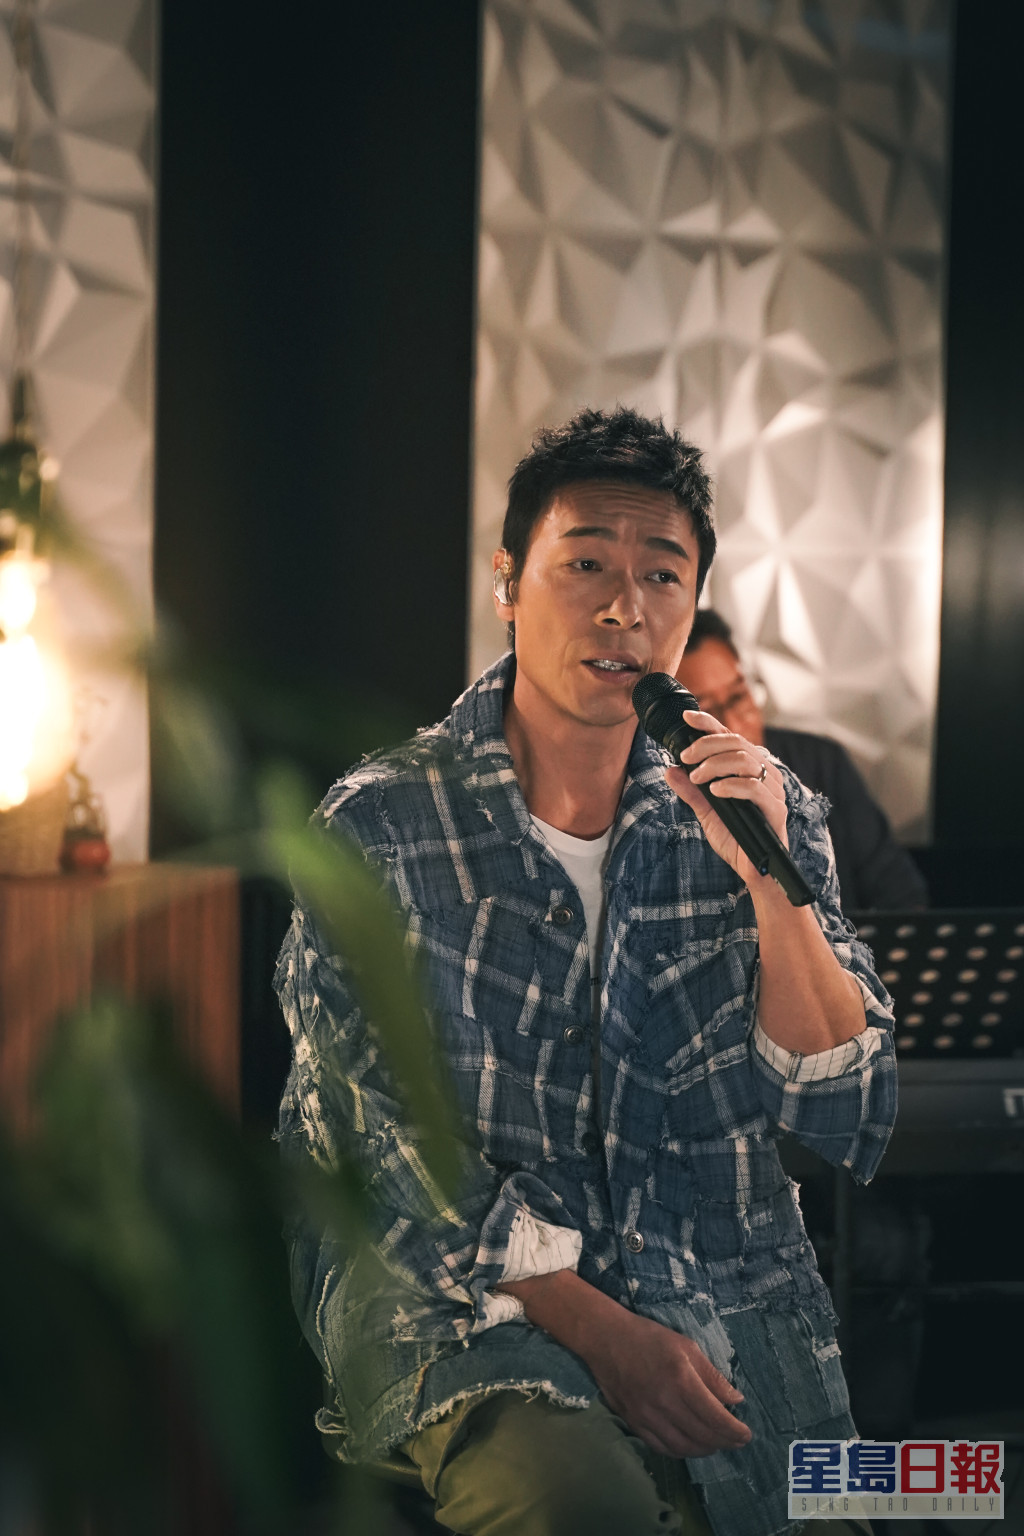 許志安去年簽約環球唱片推出新歌，正式復出歌壇，開直播演唱會時更狀態大勇，獲得不少樂迷支持。